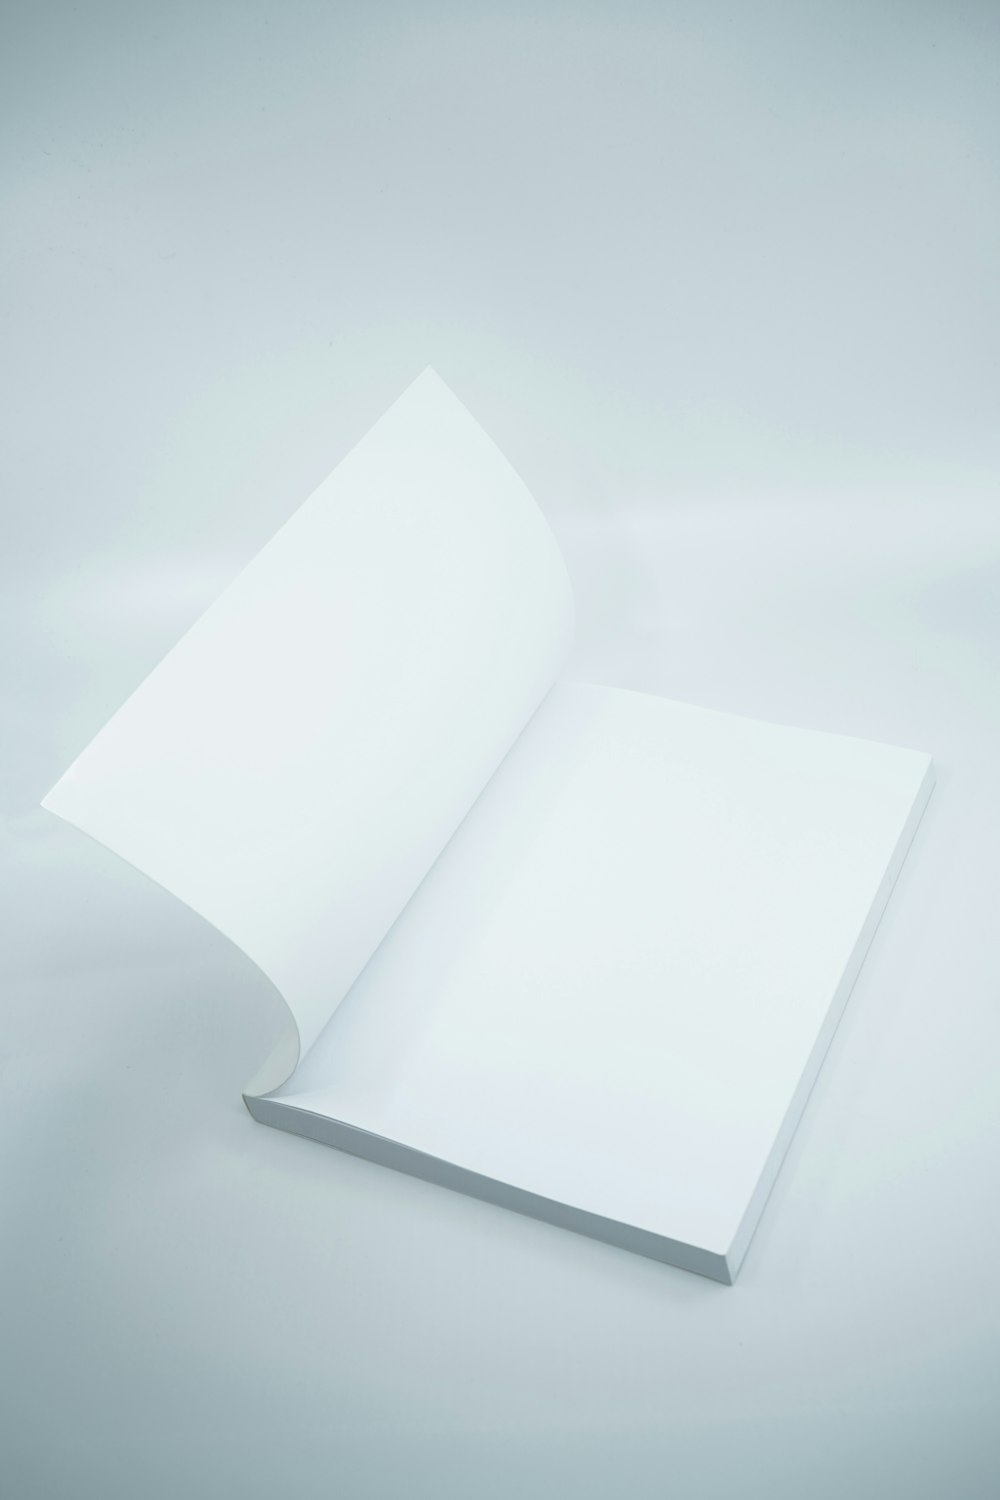 白い表面に白いプリンター用紙